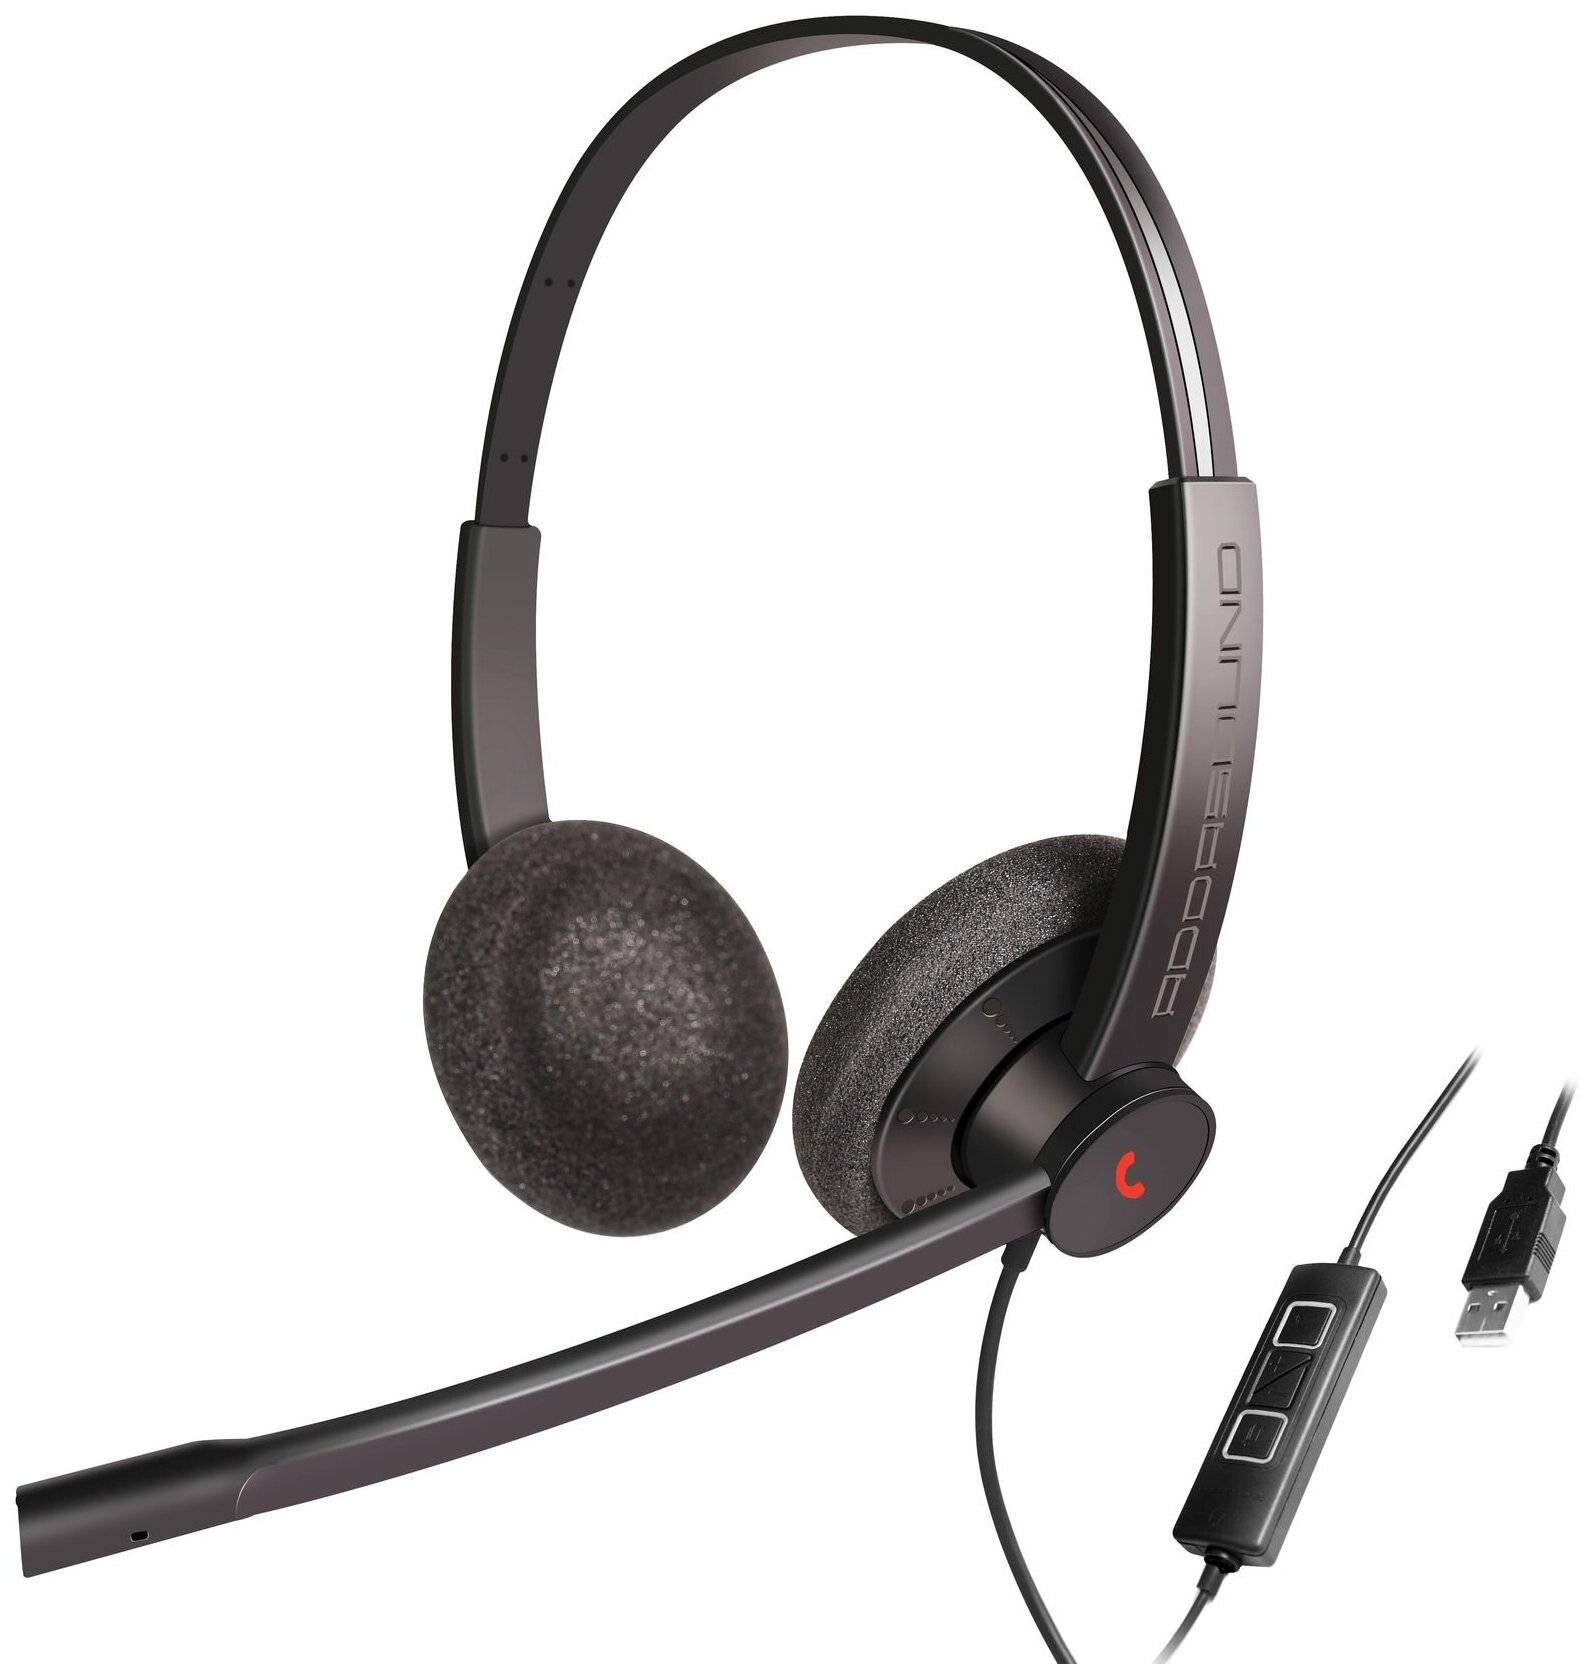 Профессиональные наушники с микрофоном для компьютера ADDASOUND Epic 302, USB-А, шумоподавление, 100% UC совместимость, цвет черно-серый, (ADD-EPIC-302)